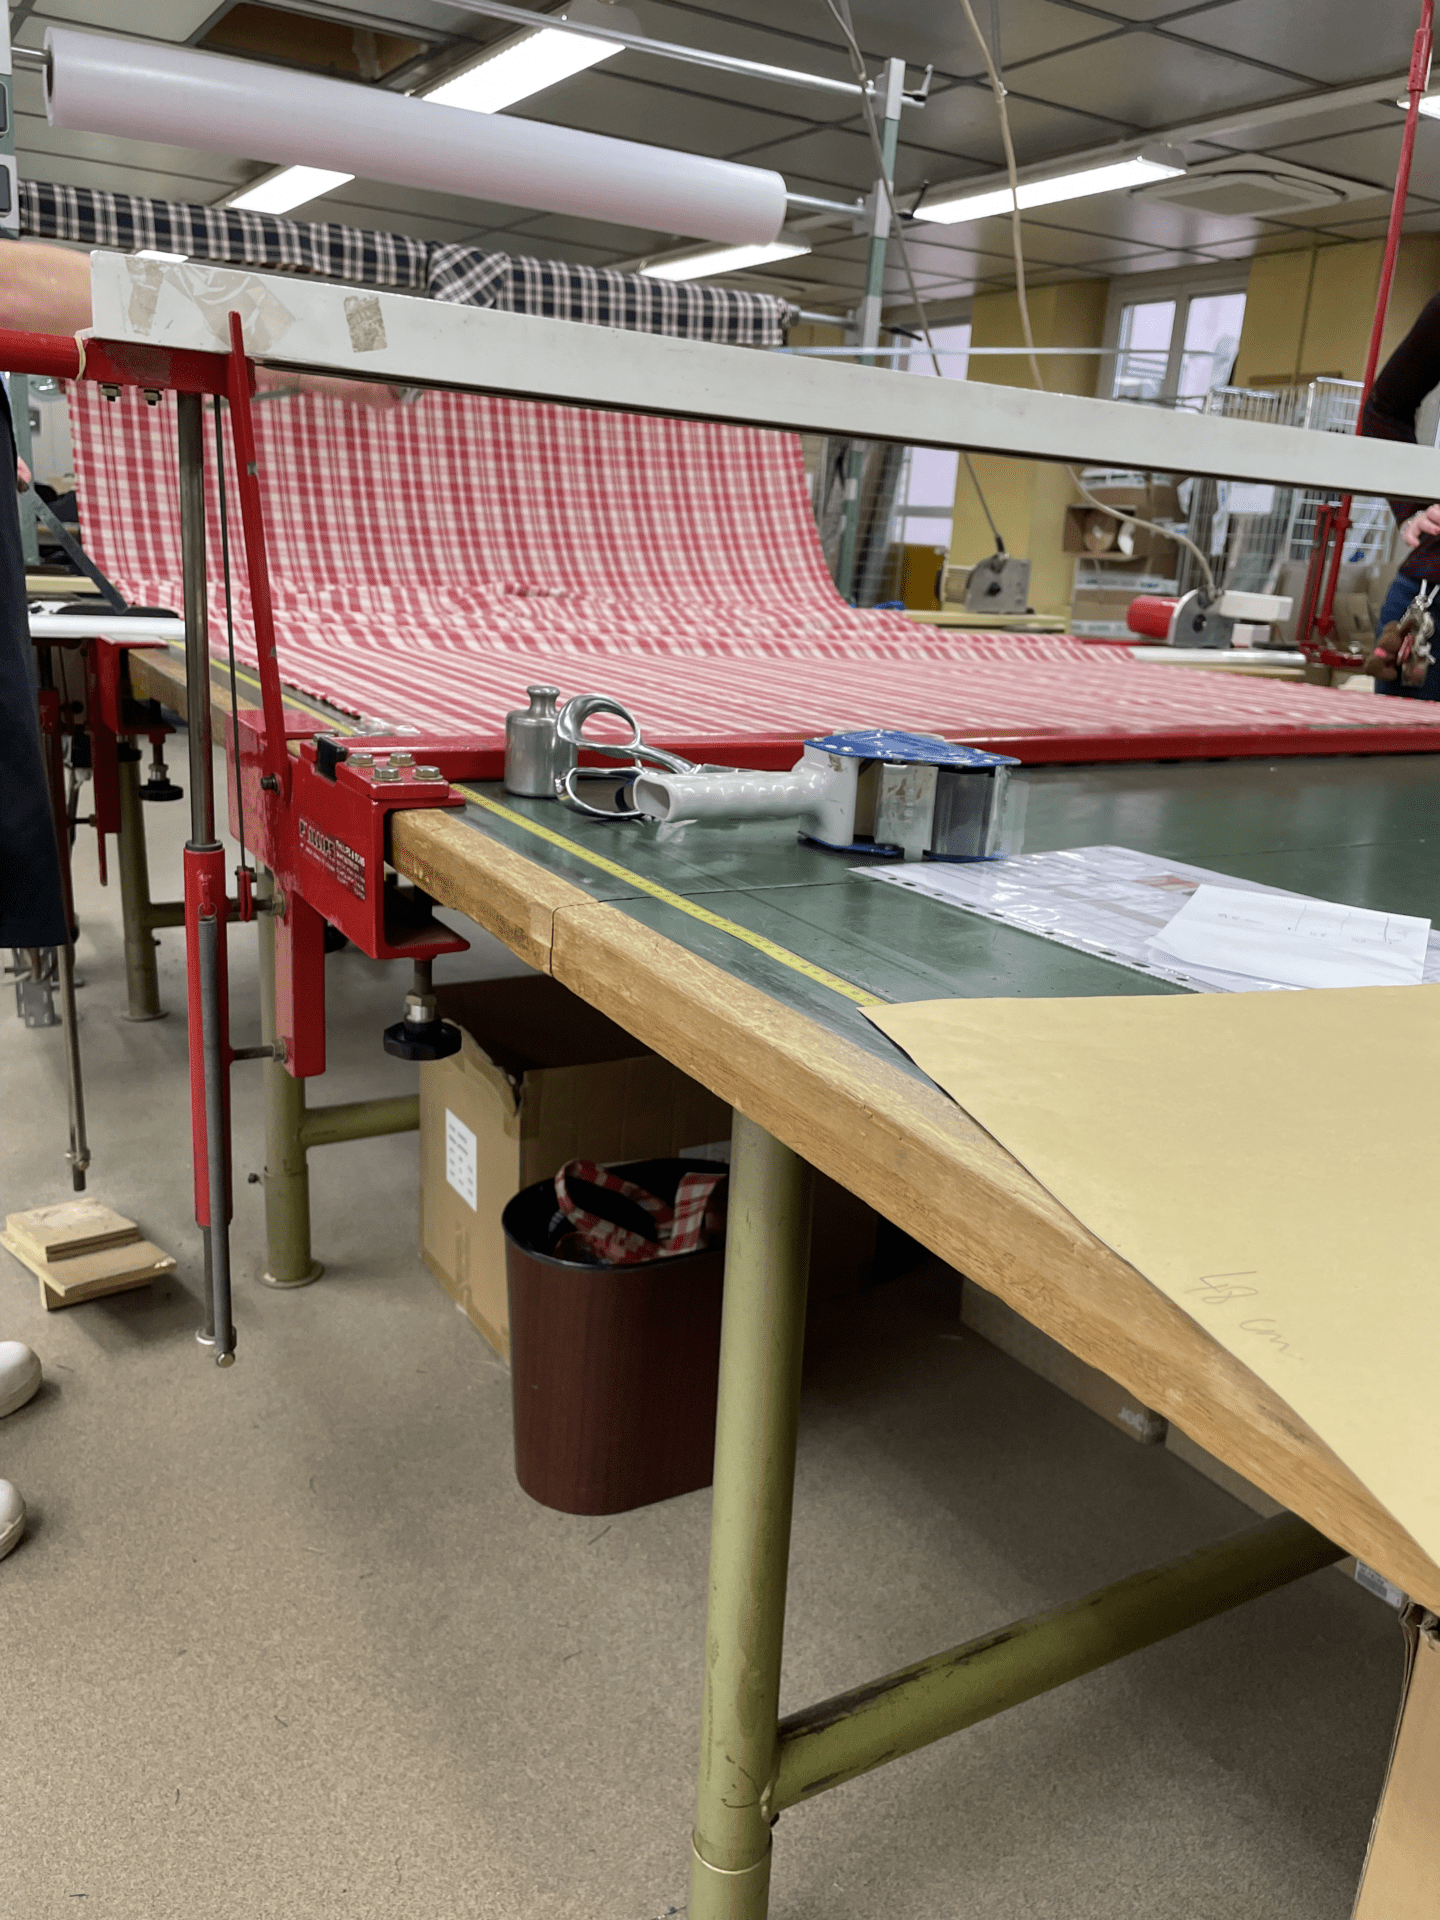 Équipement Atelier Couture : Petit matériel : bobine de fil, aiguille, coussinets, mètres